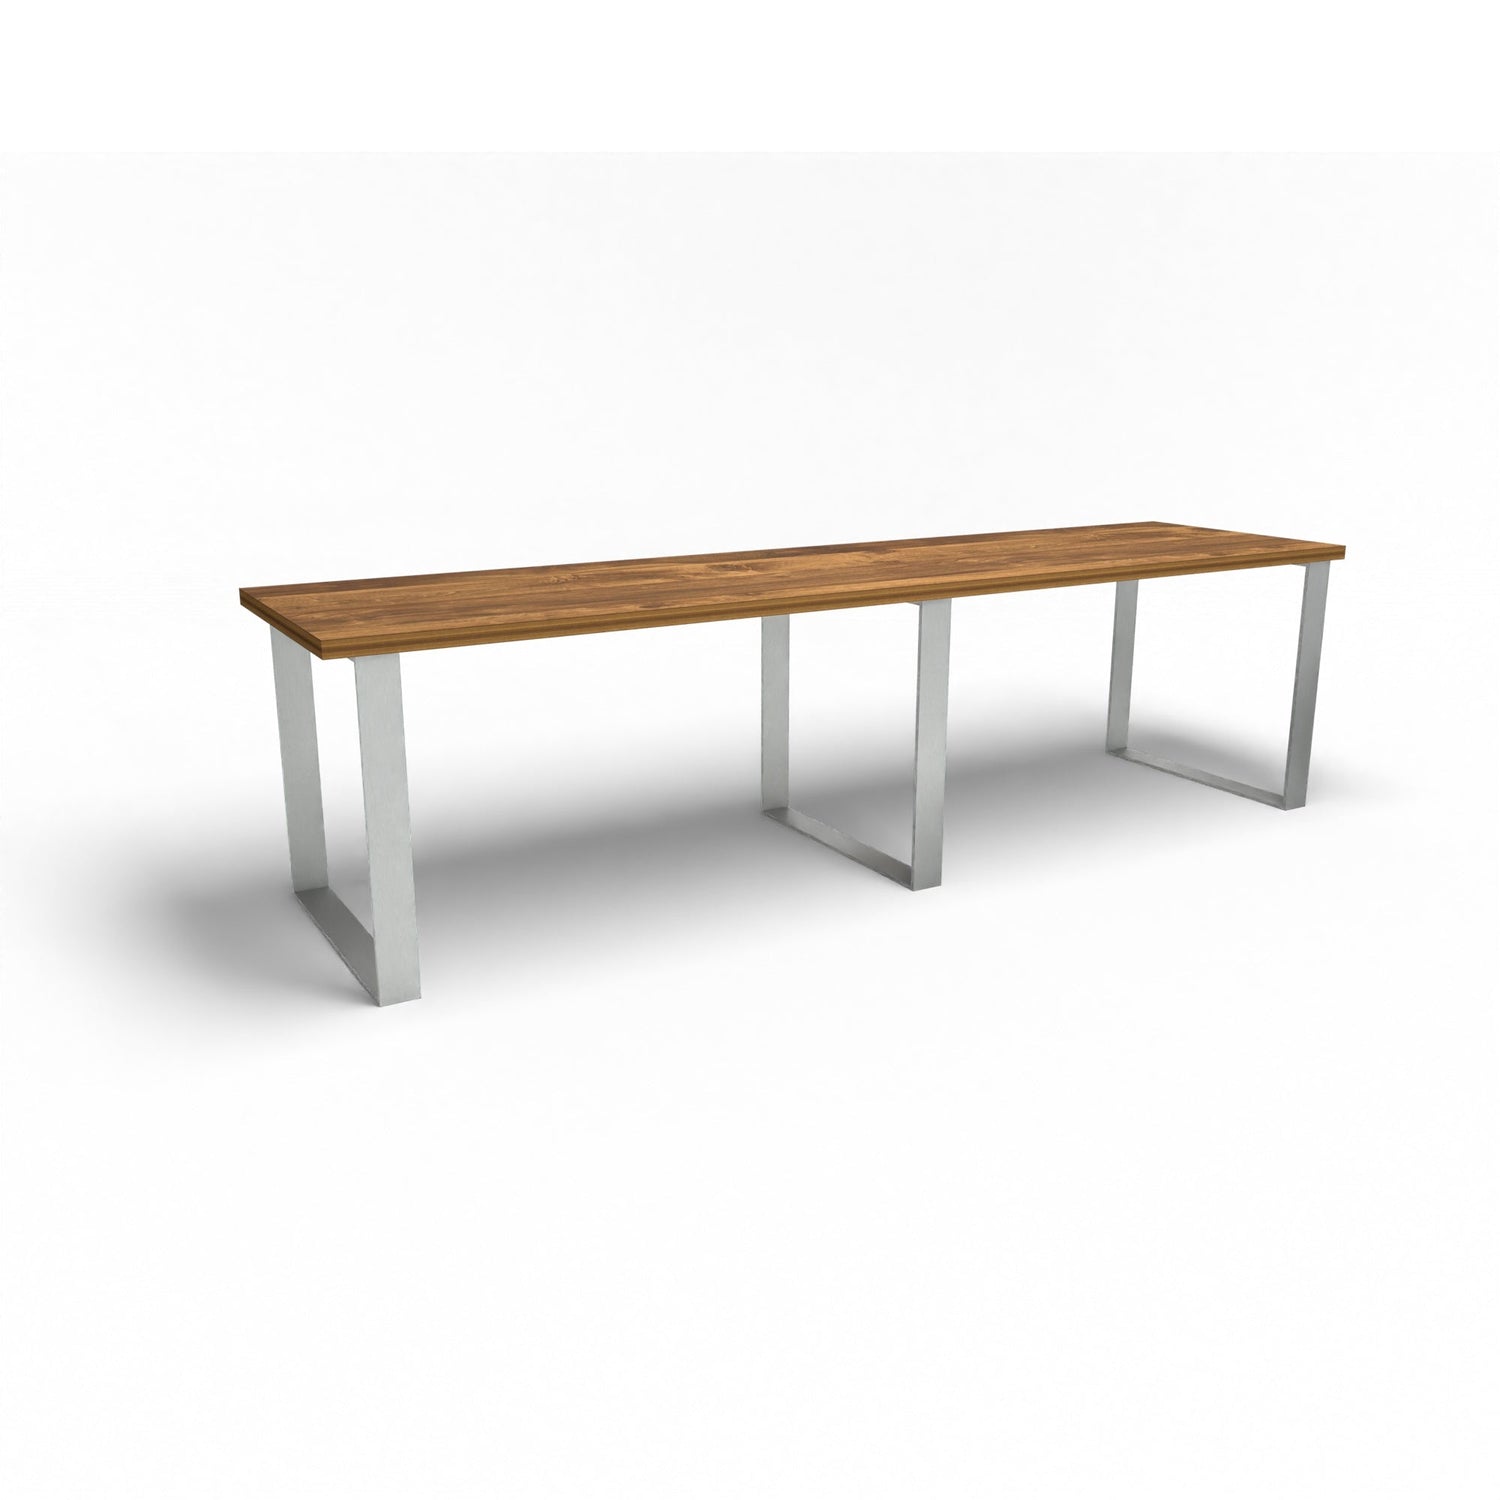 Holztisch - Lundgrün Eiche - 3 Meter